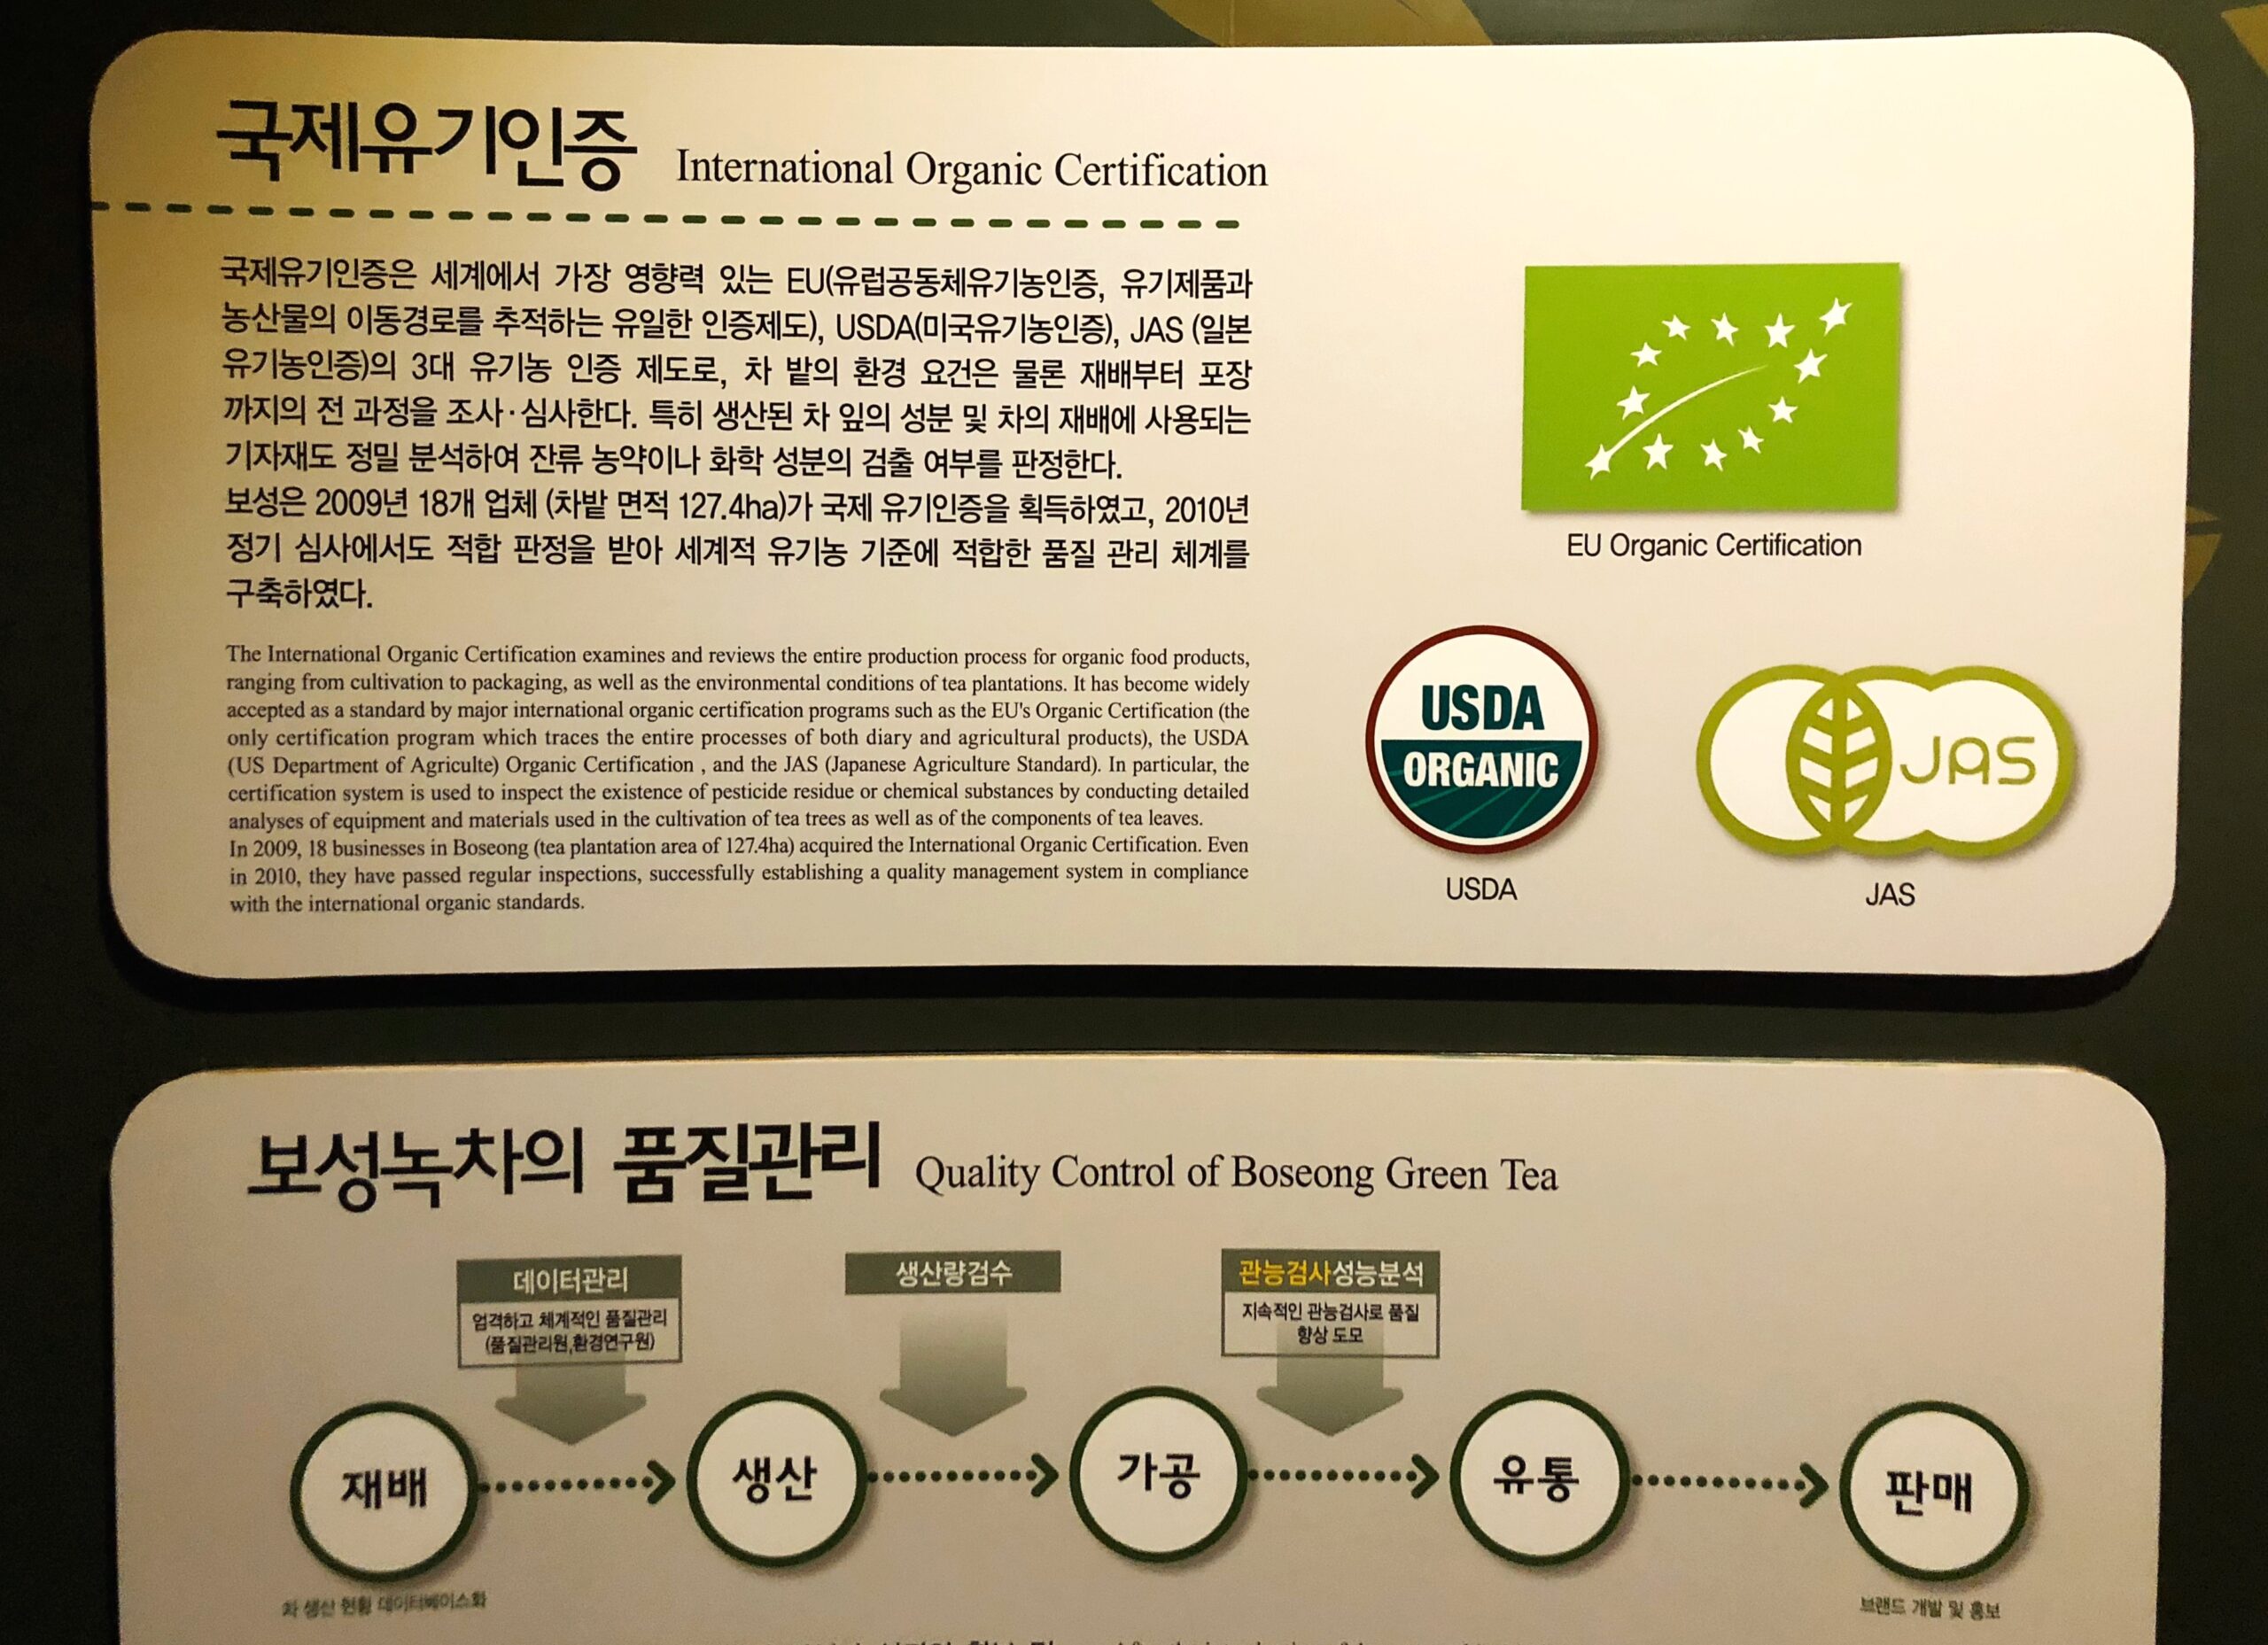 Korea Green Tea Museum Exhibit Sign